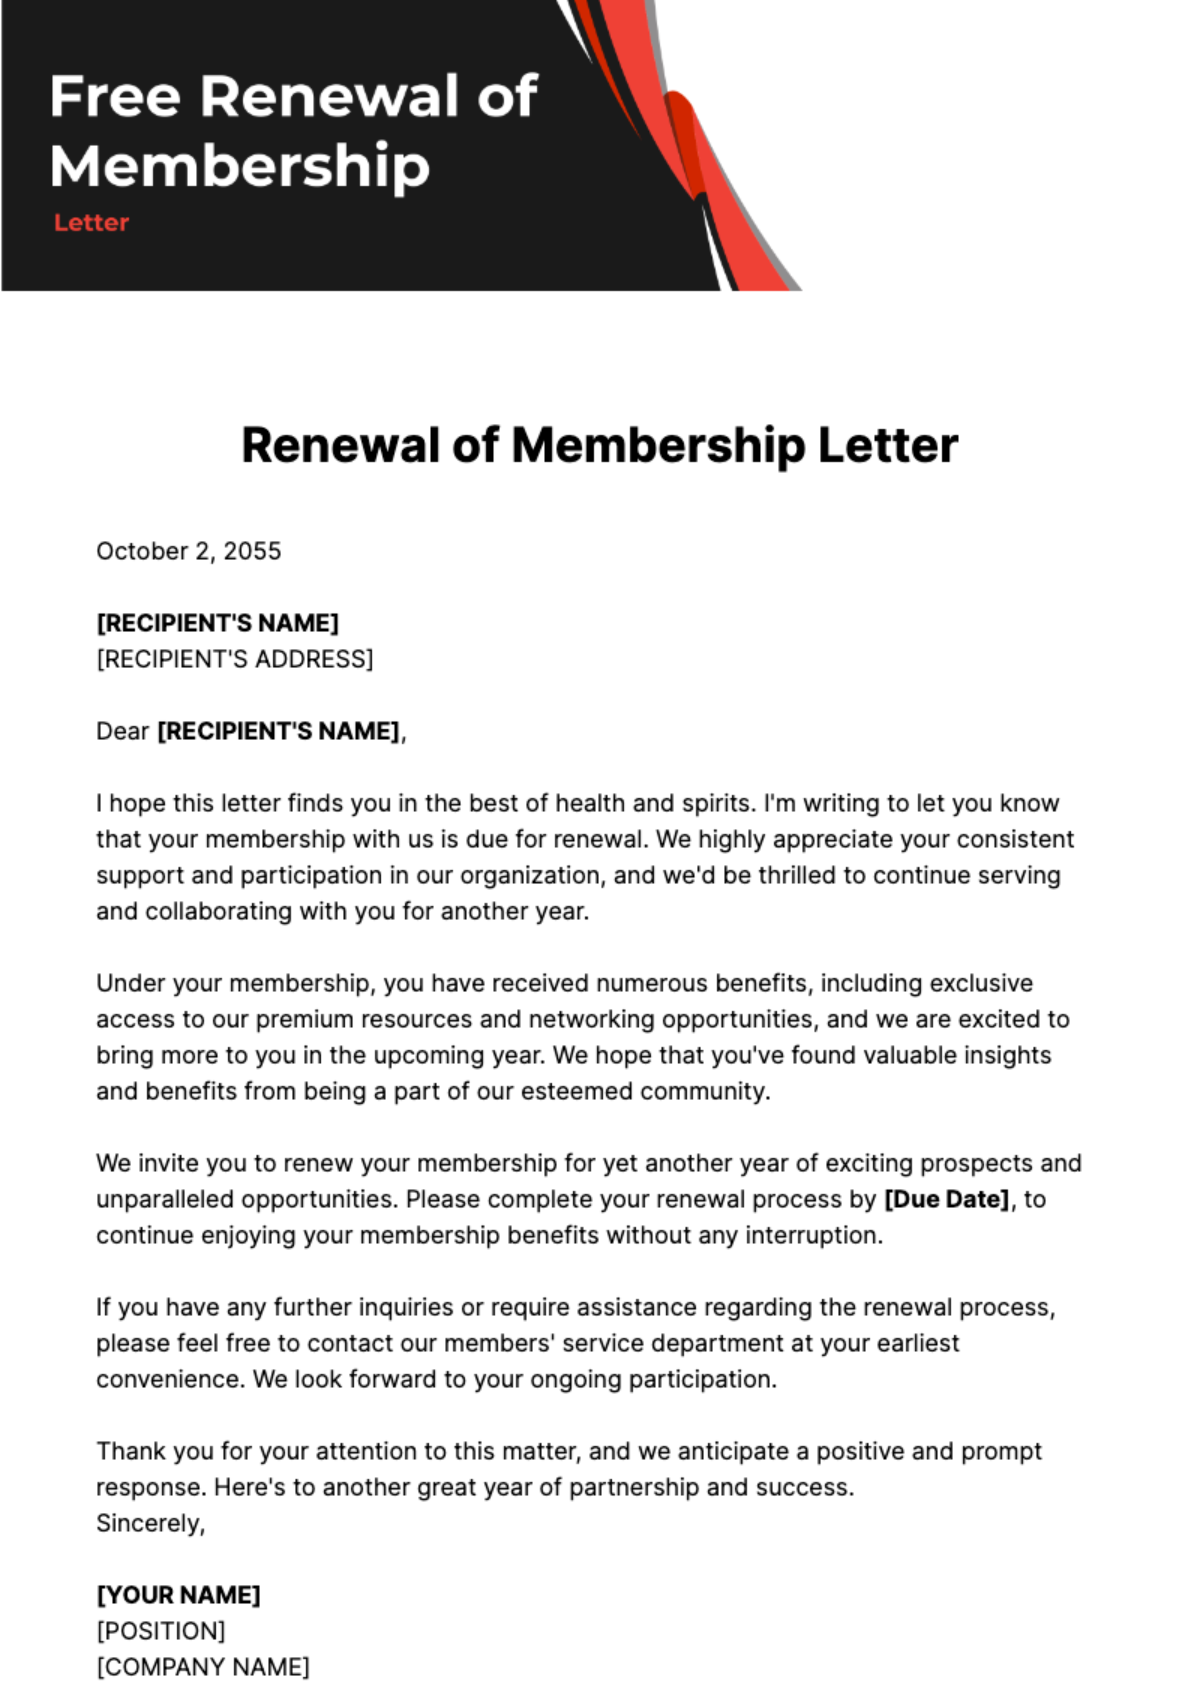 Free Renewal of Membership Letter Template